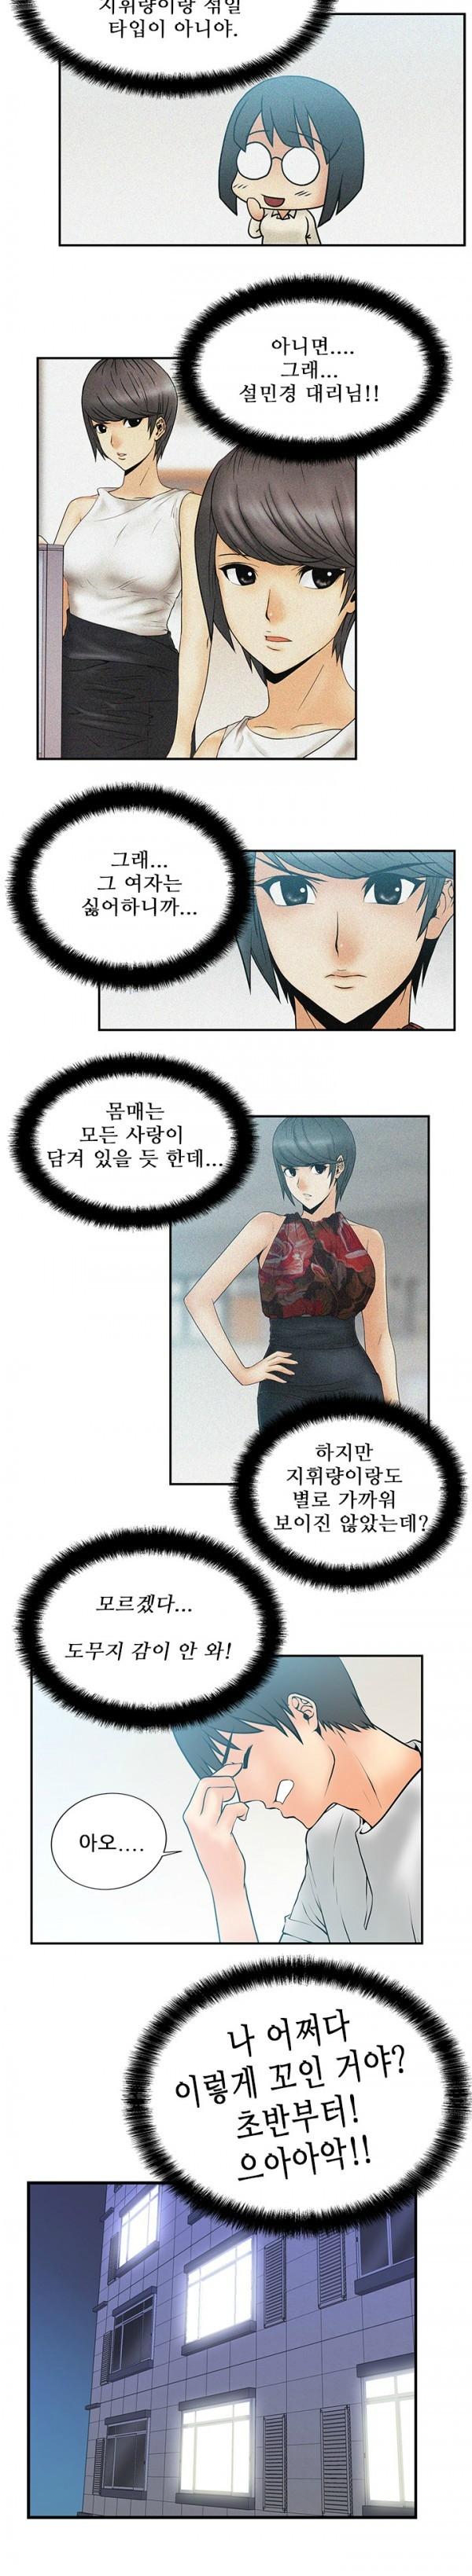 [Minu Mindu] Office Lady Vol. 1 [Korean] 72